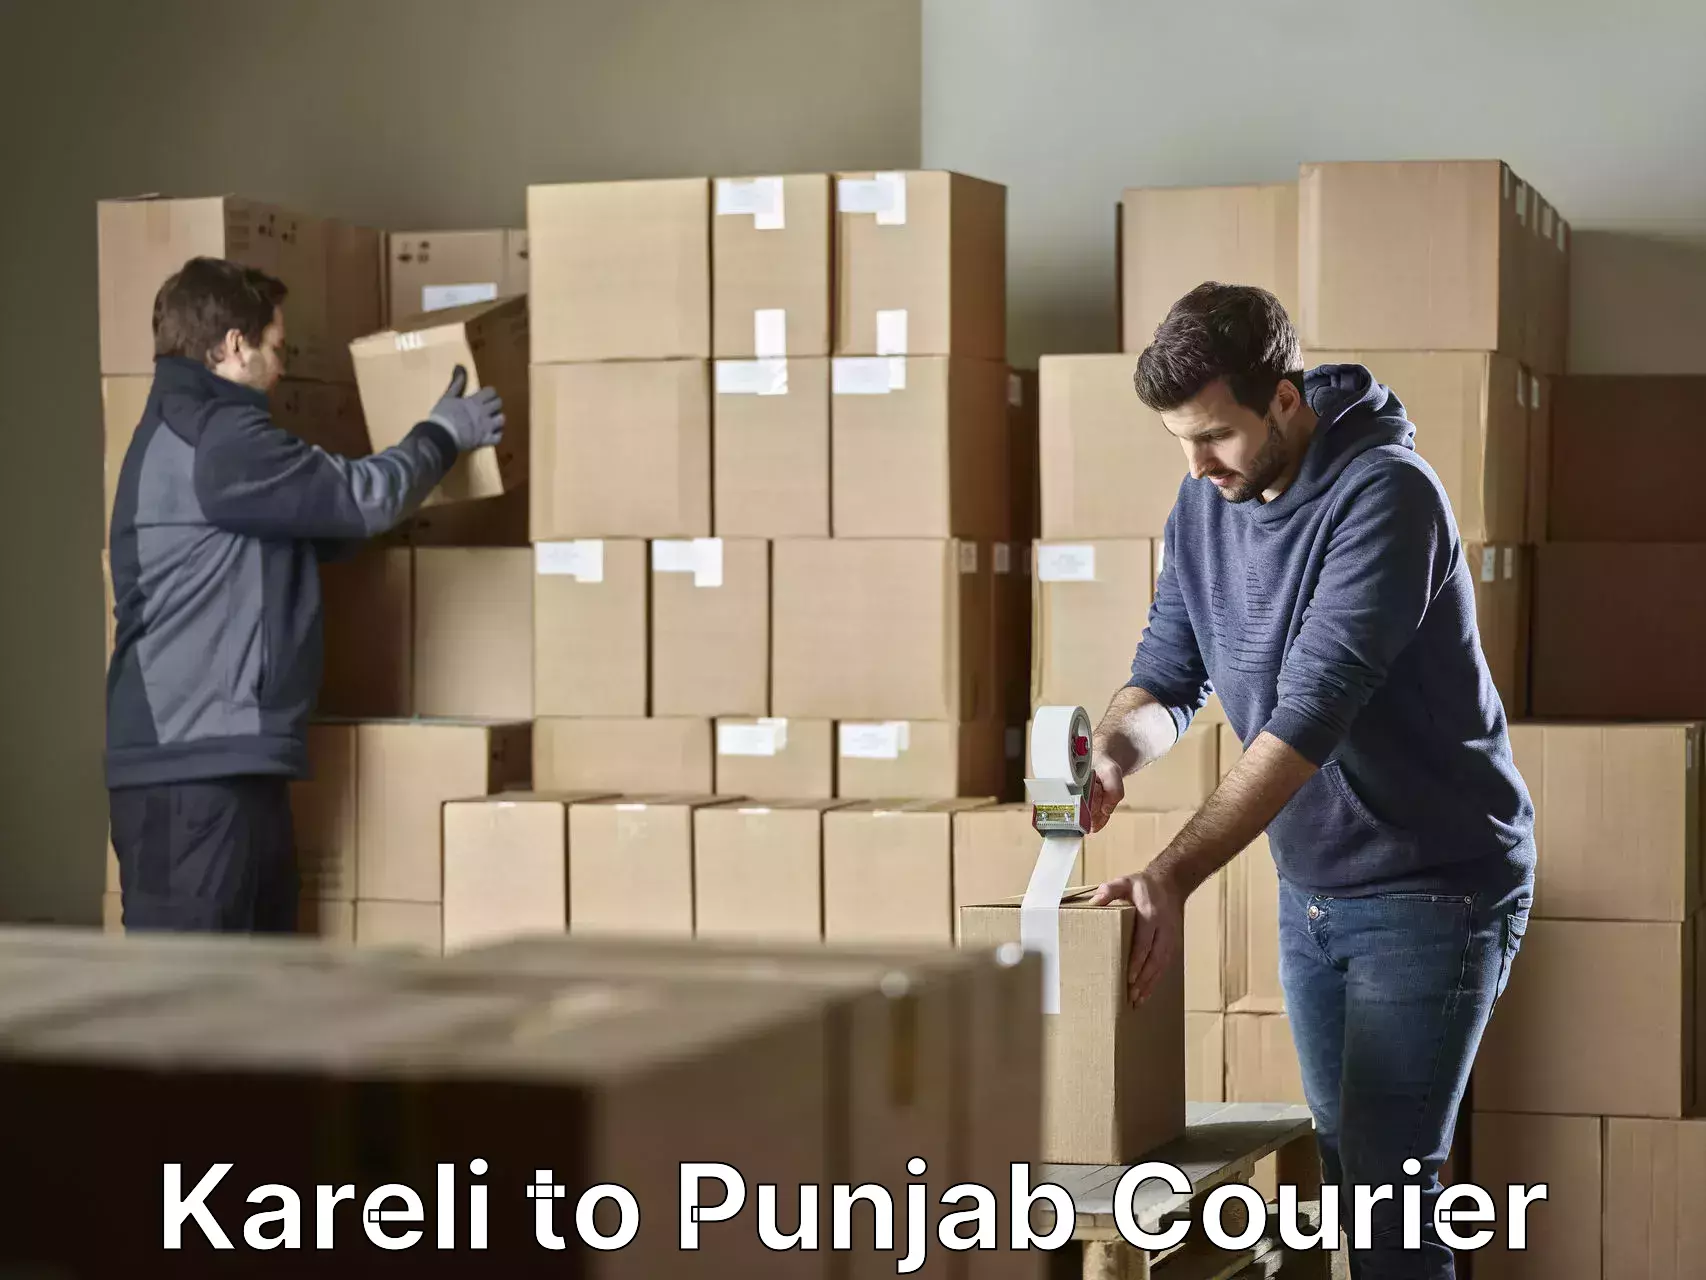 Furniture moving experts Kareli to Punjab